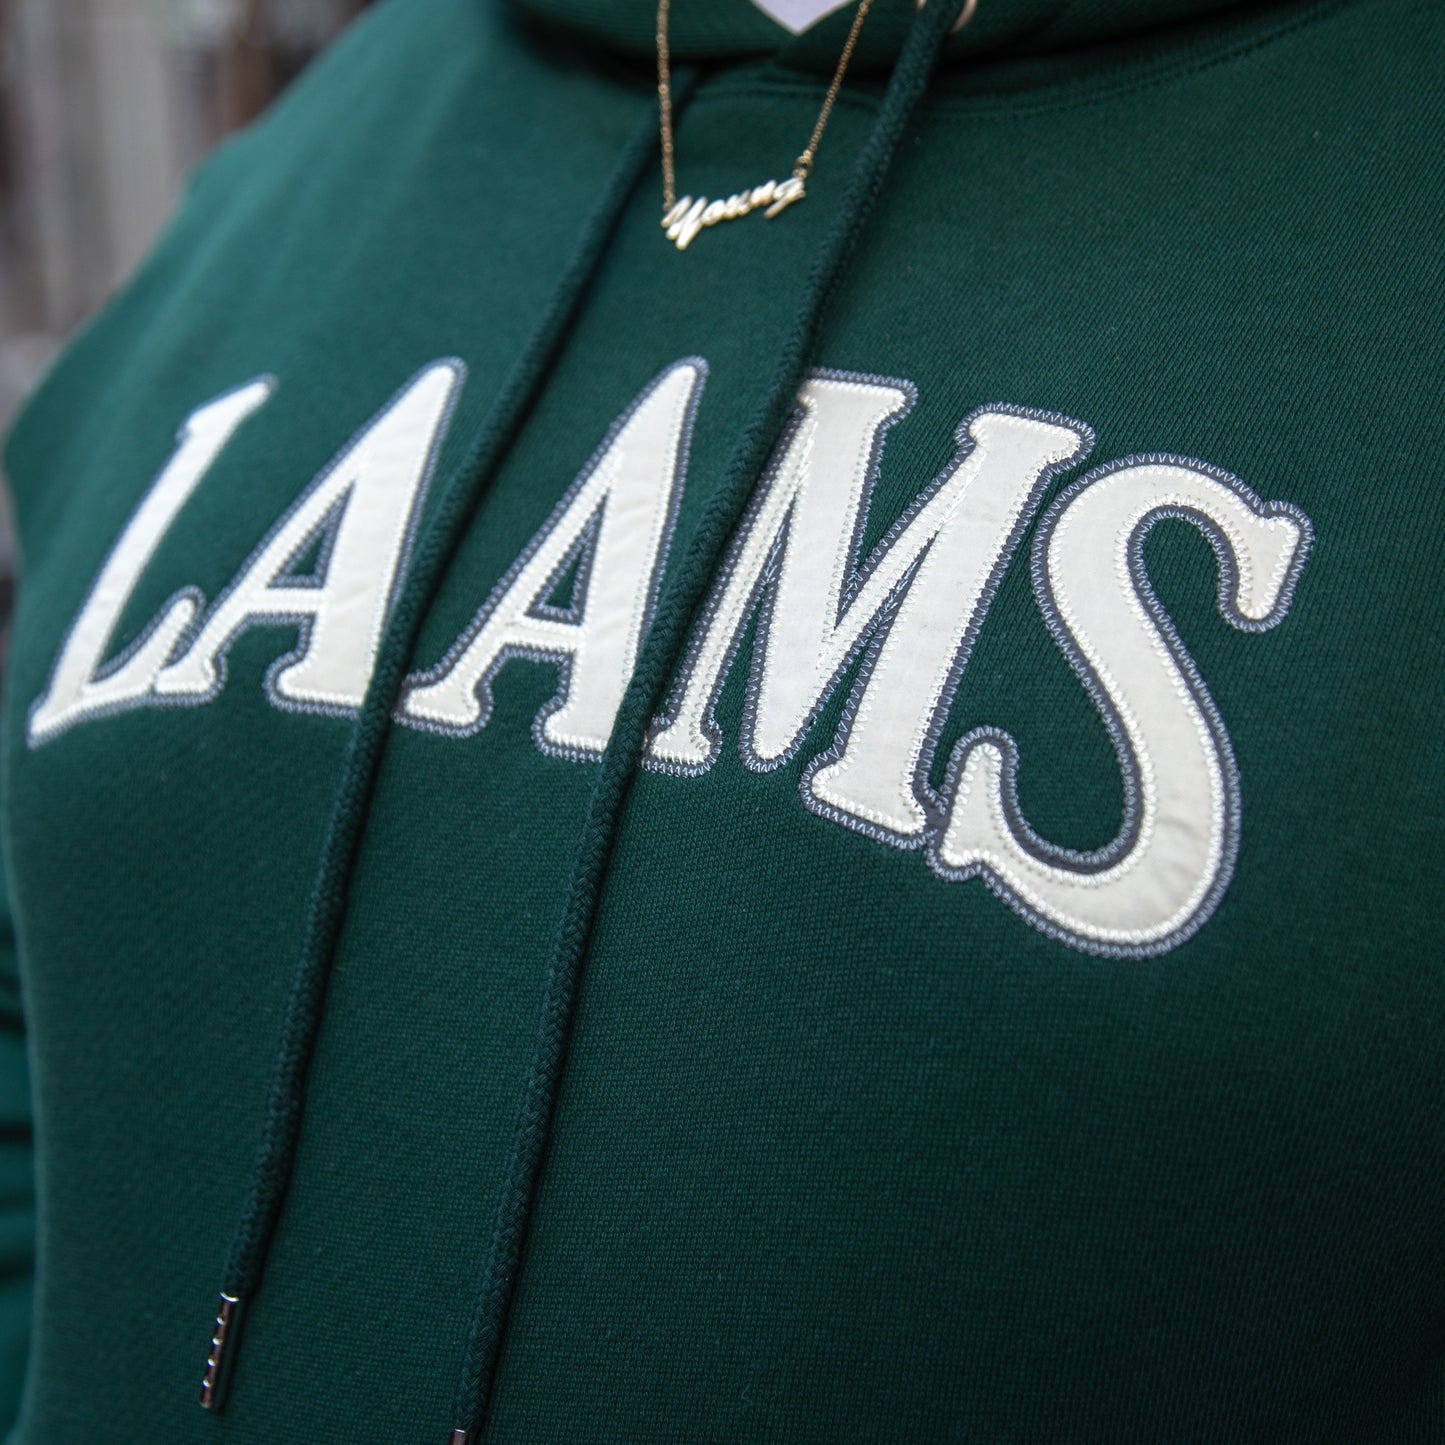 LAAMS Collegiate Hoodie (Green)